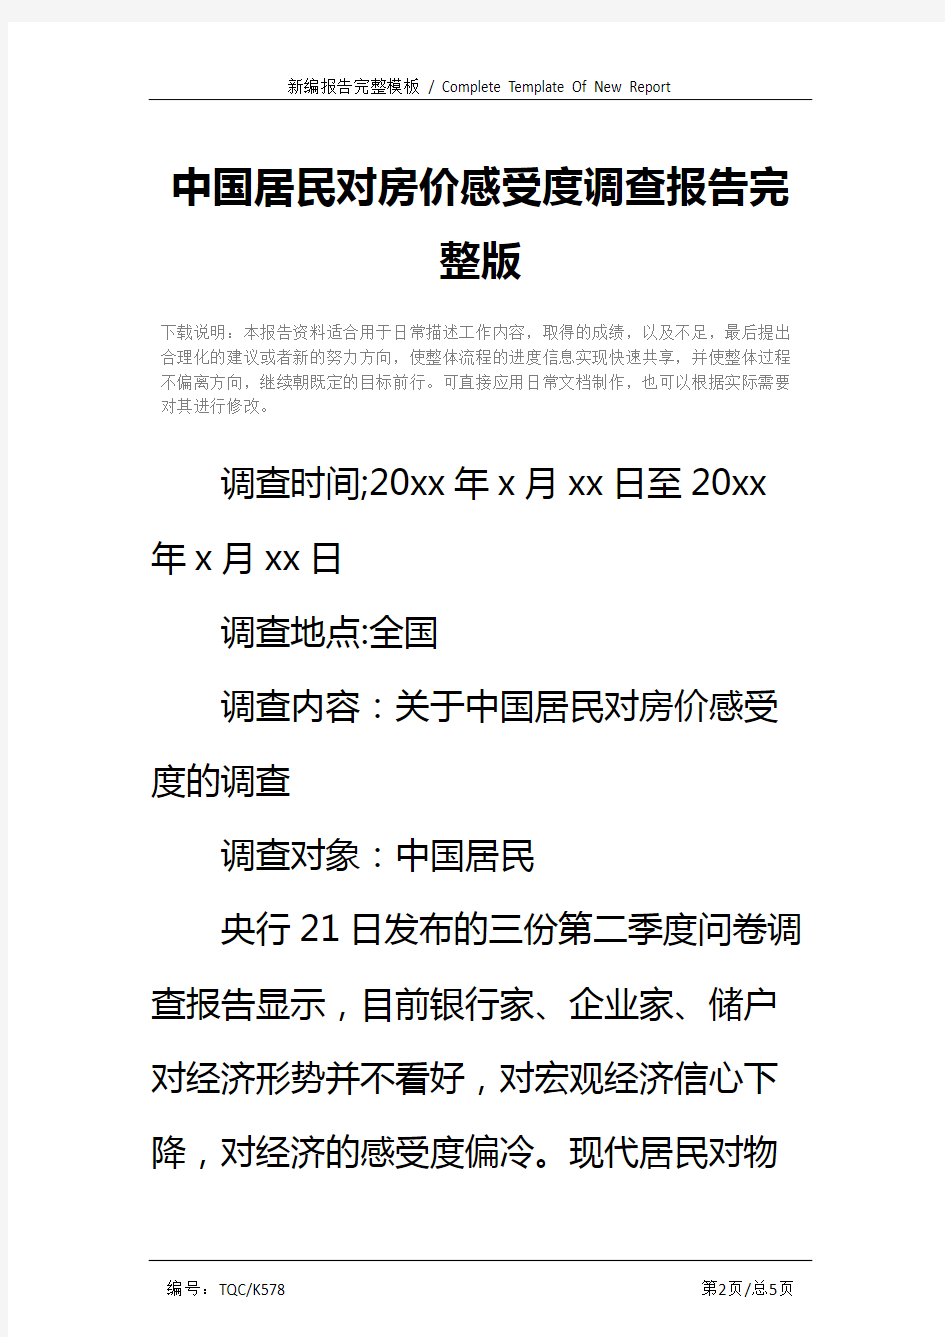 中国居民对房价感受度调查报告完整版_1